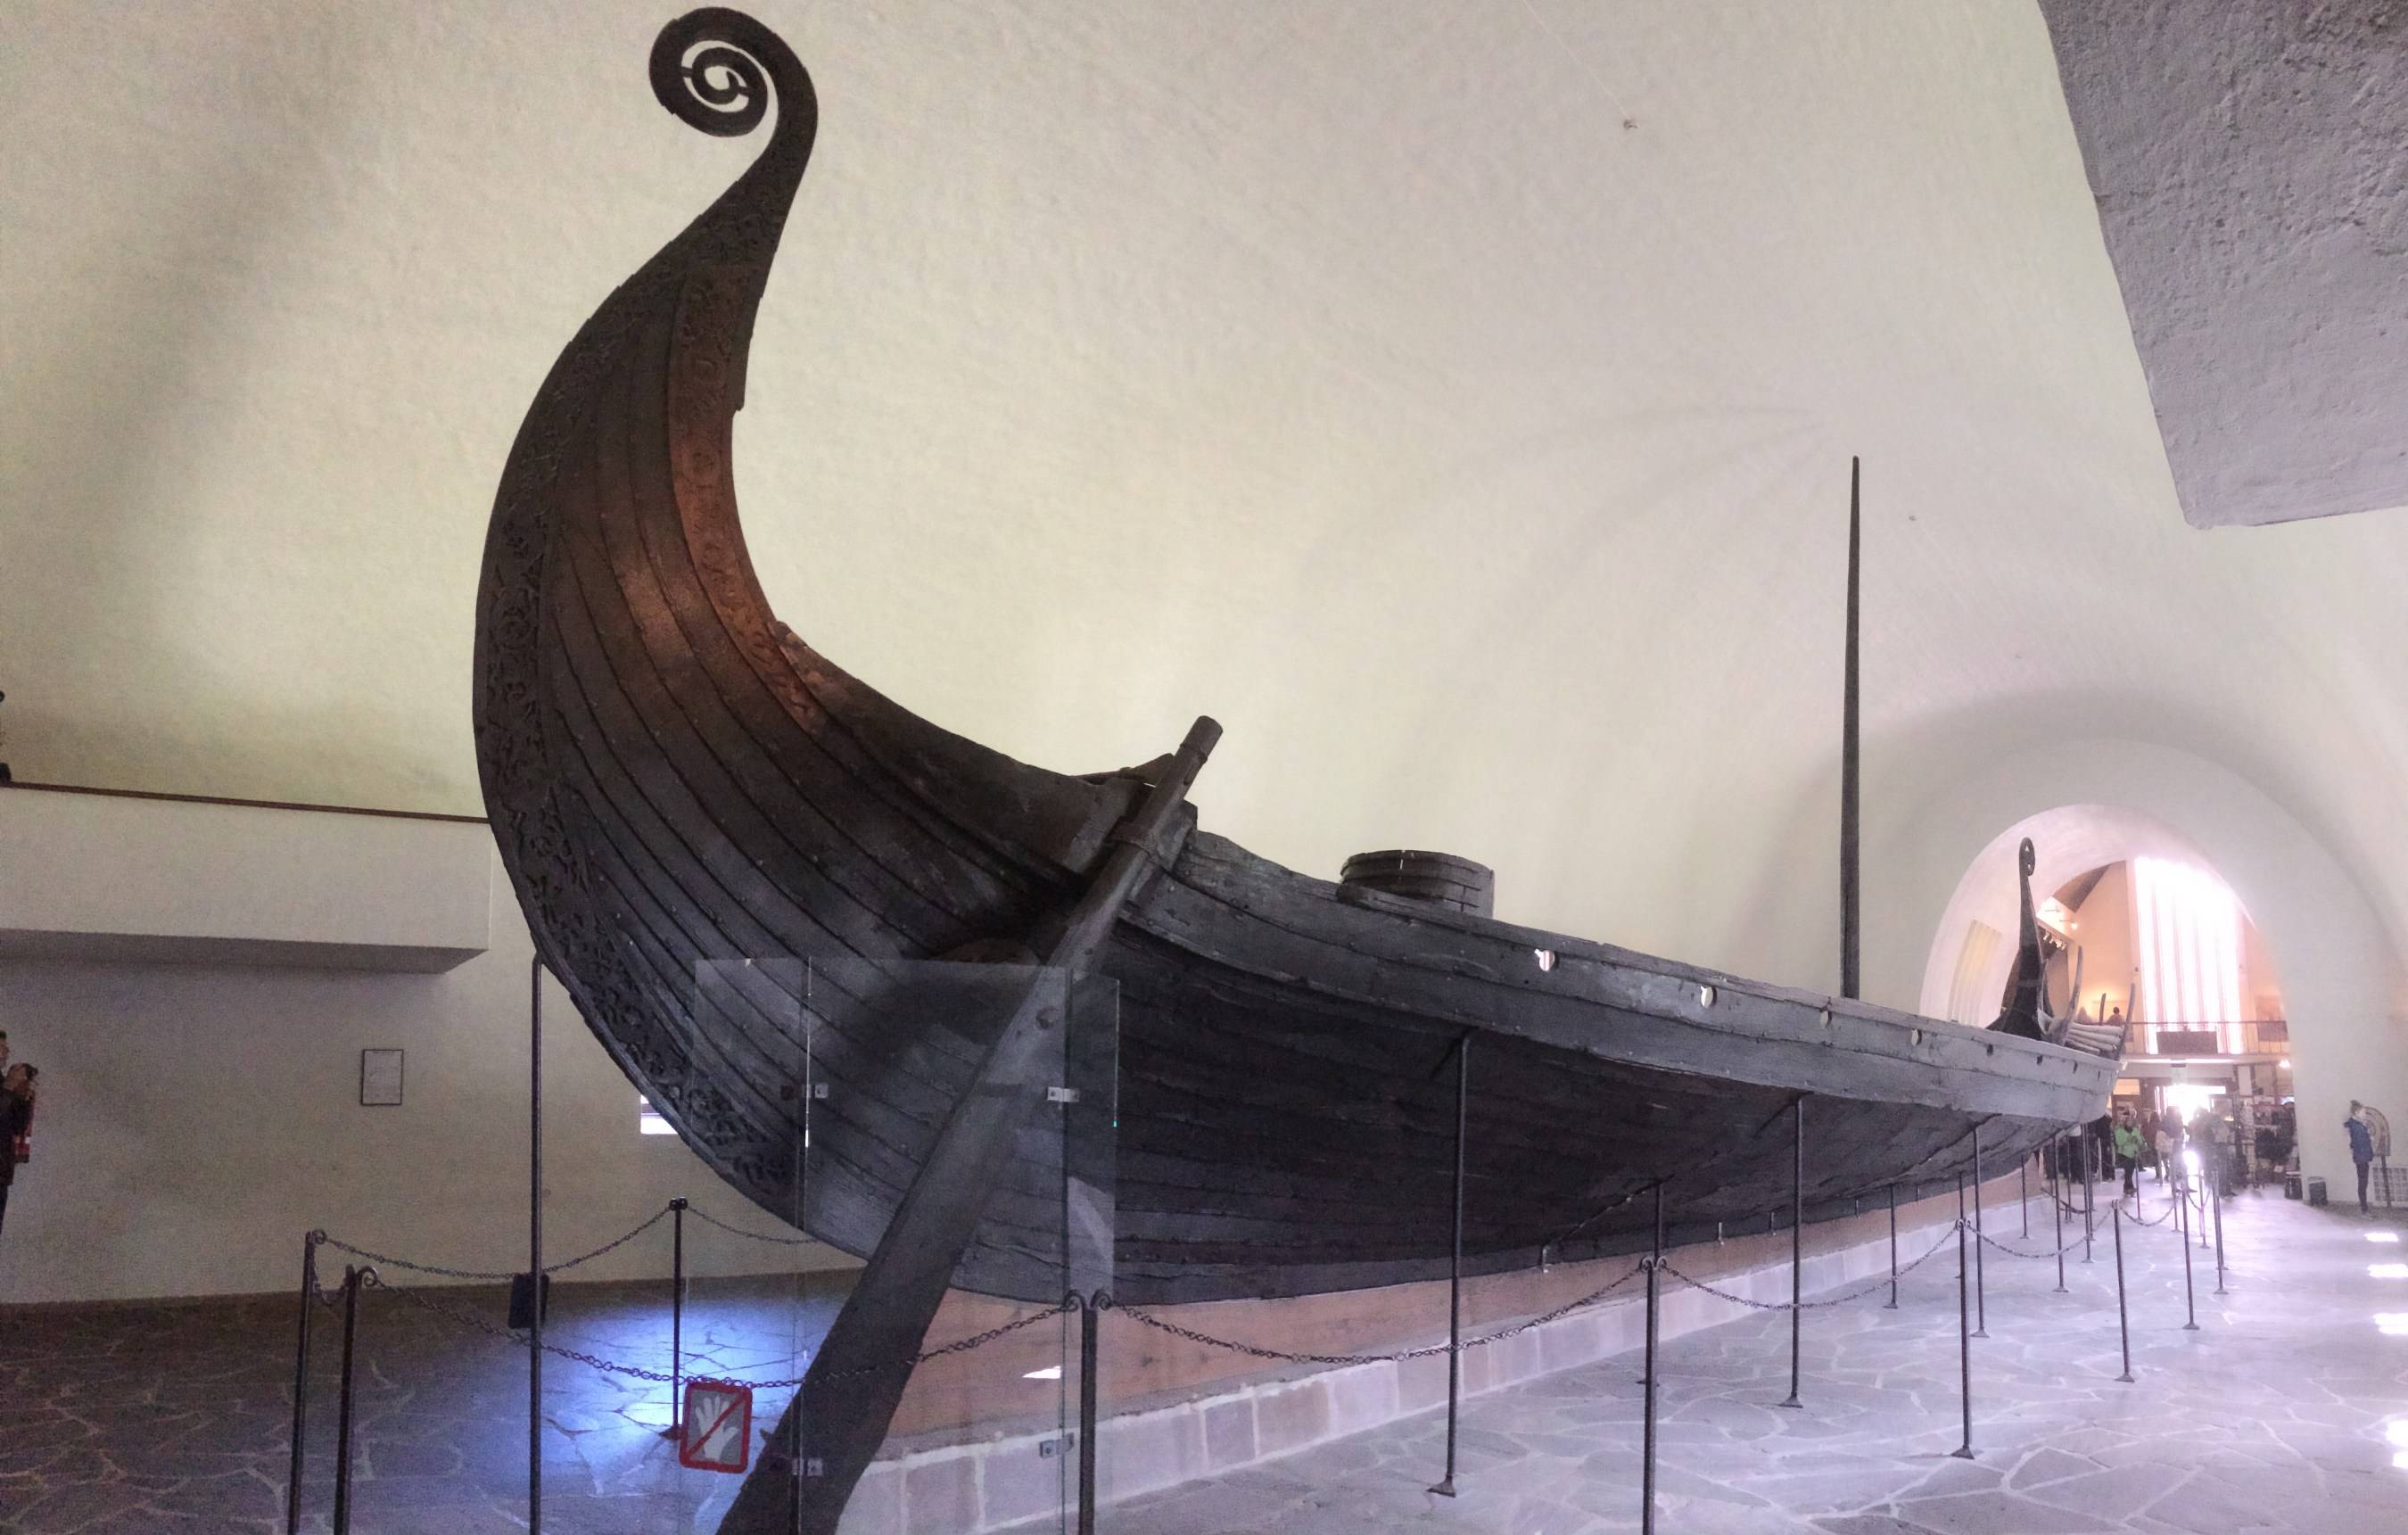 Музей кораблей викингов в норвегии: обзор экспанатов